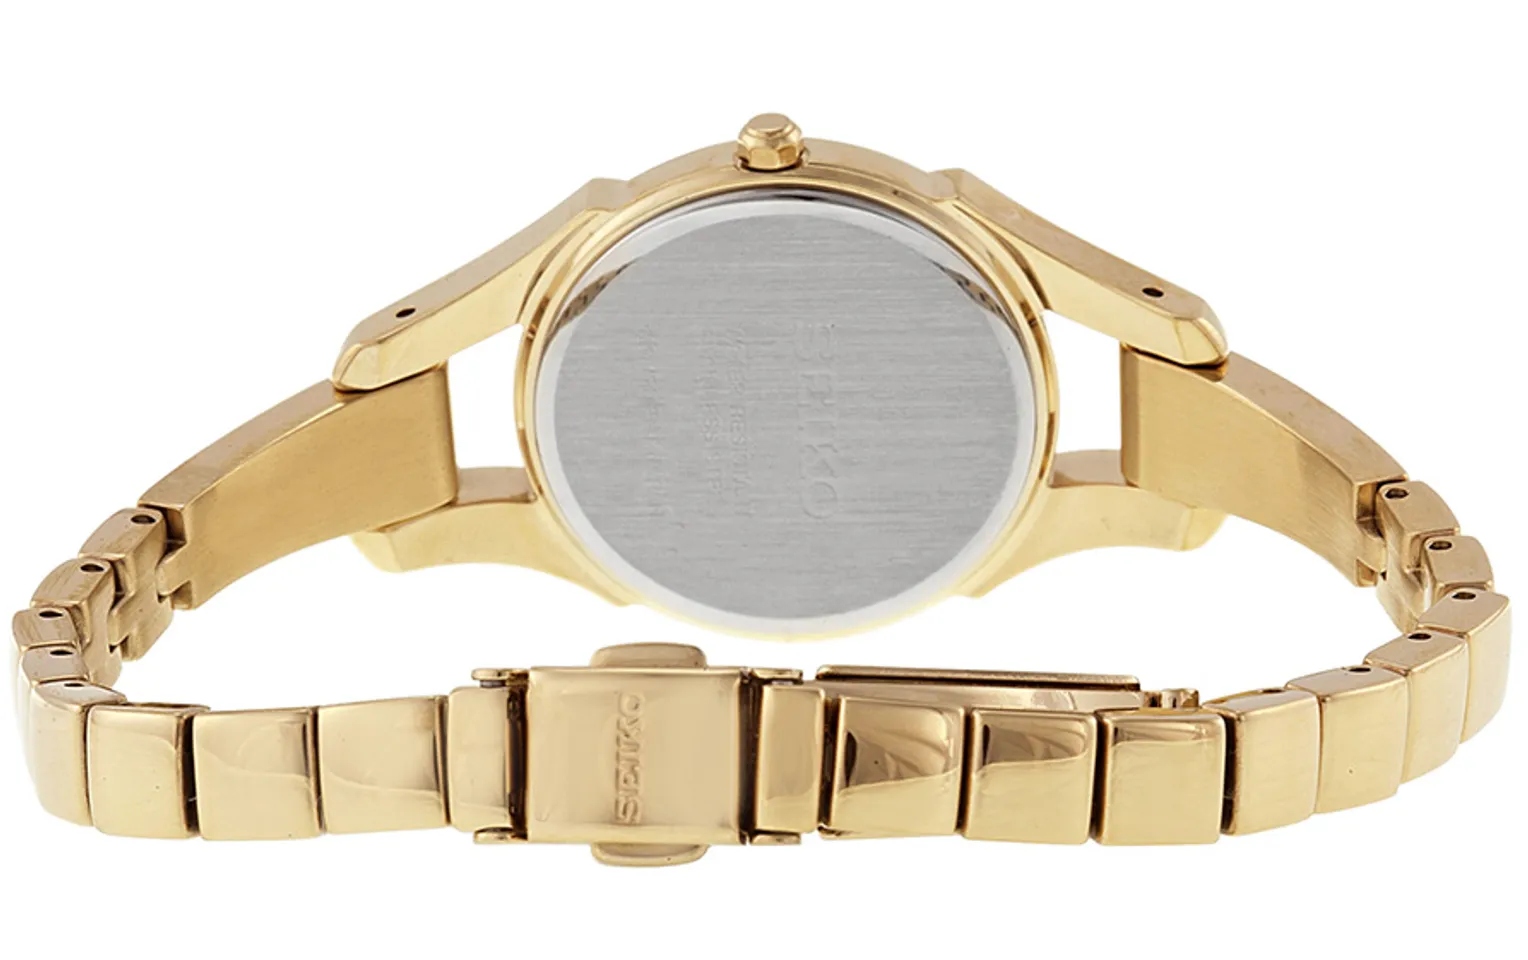 Đồng hồ Seiko Solar SUP216 cho nữ có khóa cài chắc chắn